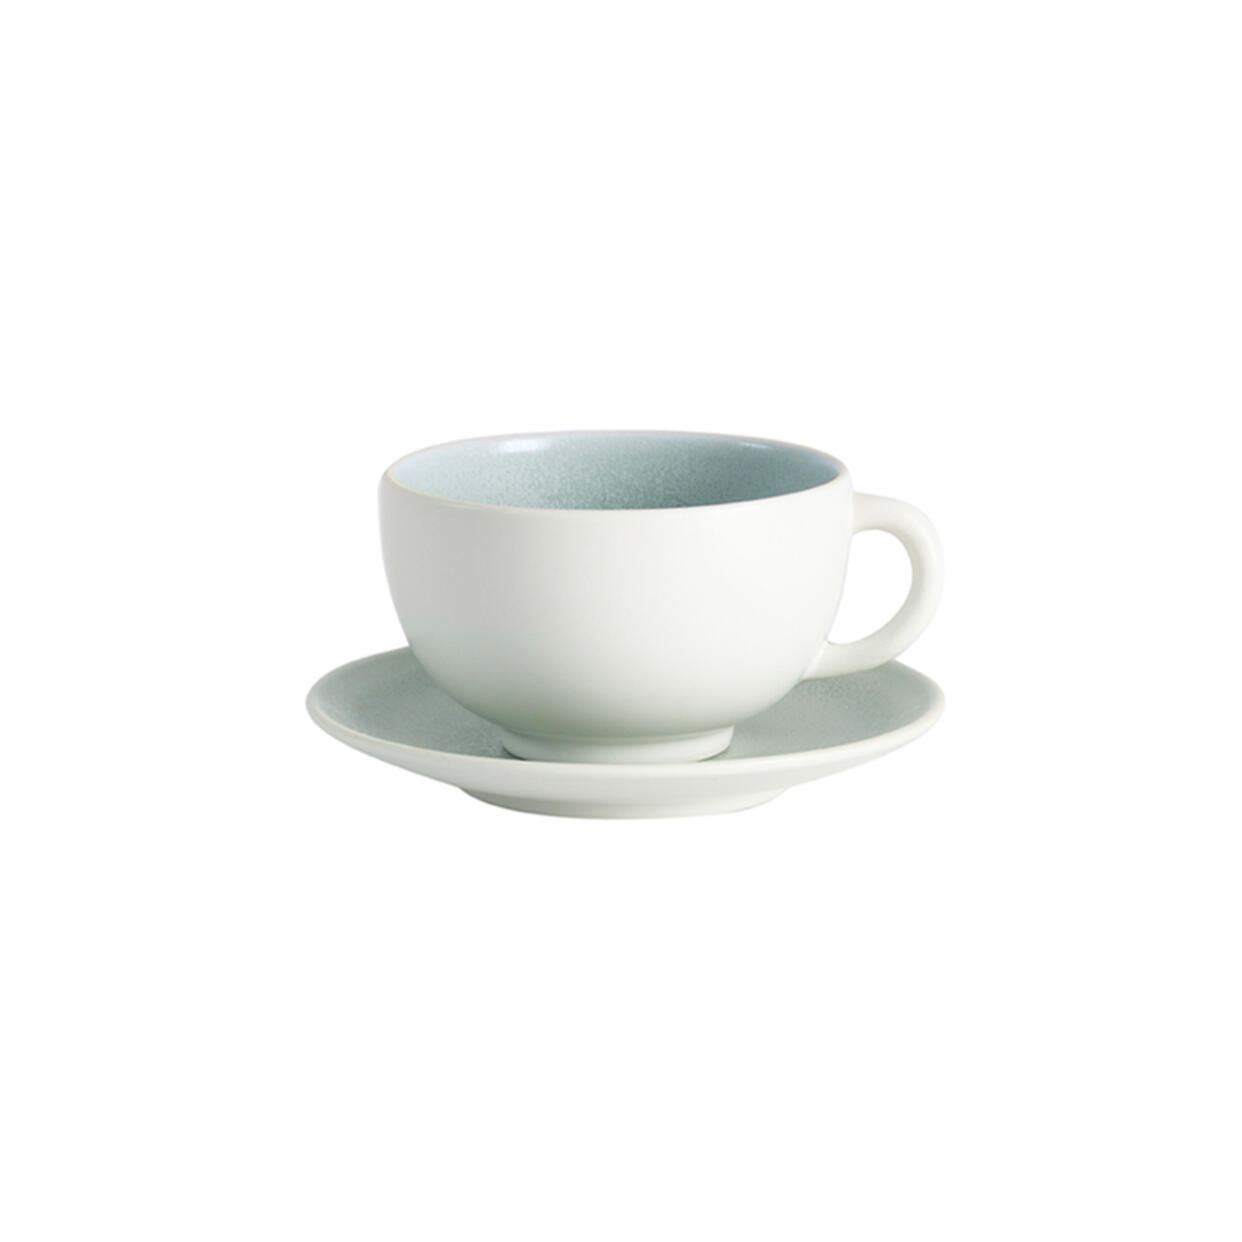 Cup & saucer - M Tourron eucalyptus ceramic manufacturer